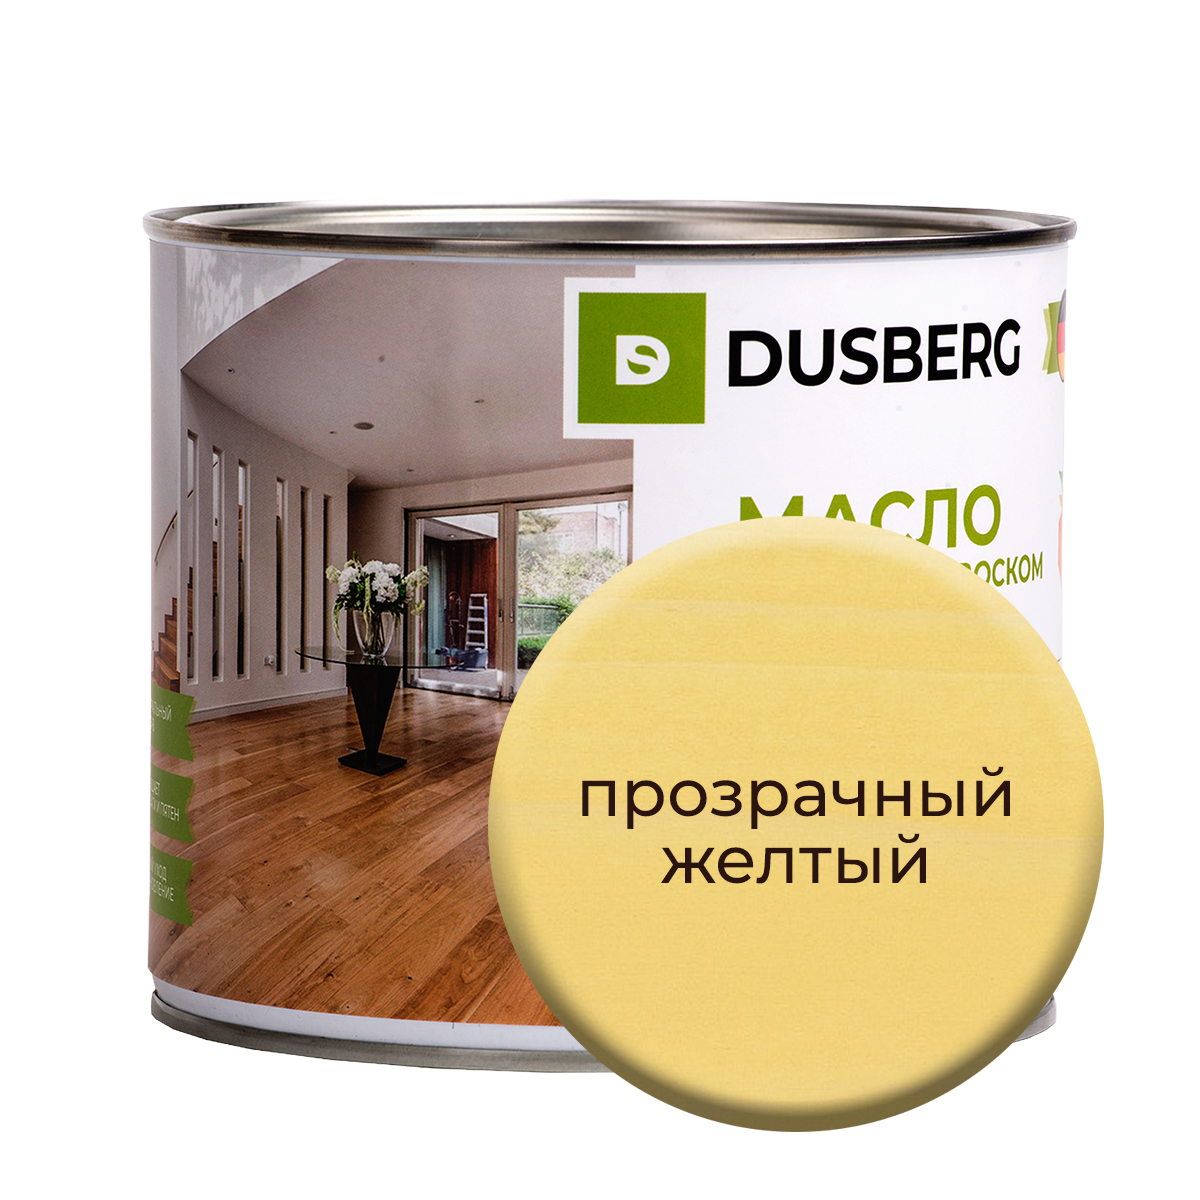 Масло Dusberg с твердым воском на бесцветной основе, 2 л Прозрачный желтый масло dusberg с твердым воском на бес ной основе 2 л лиственница